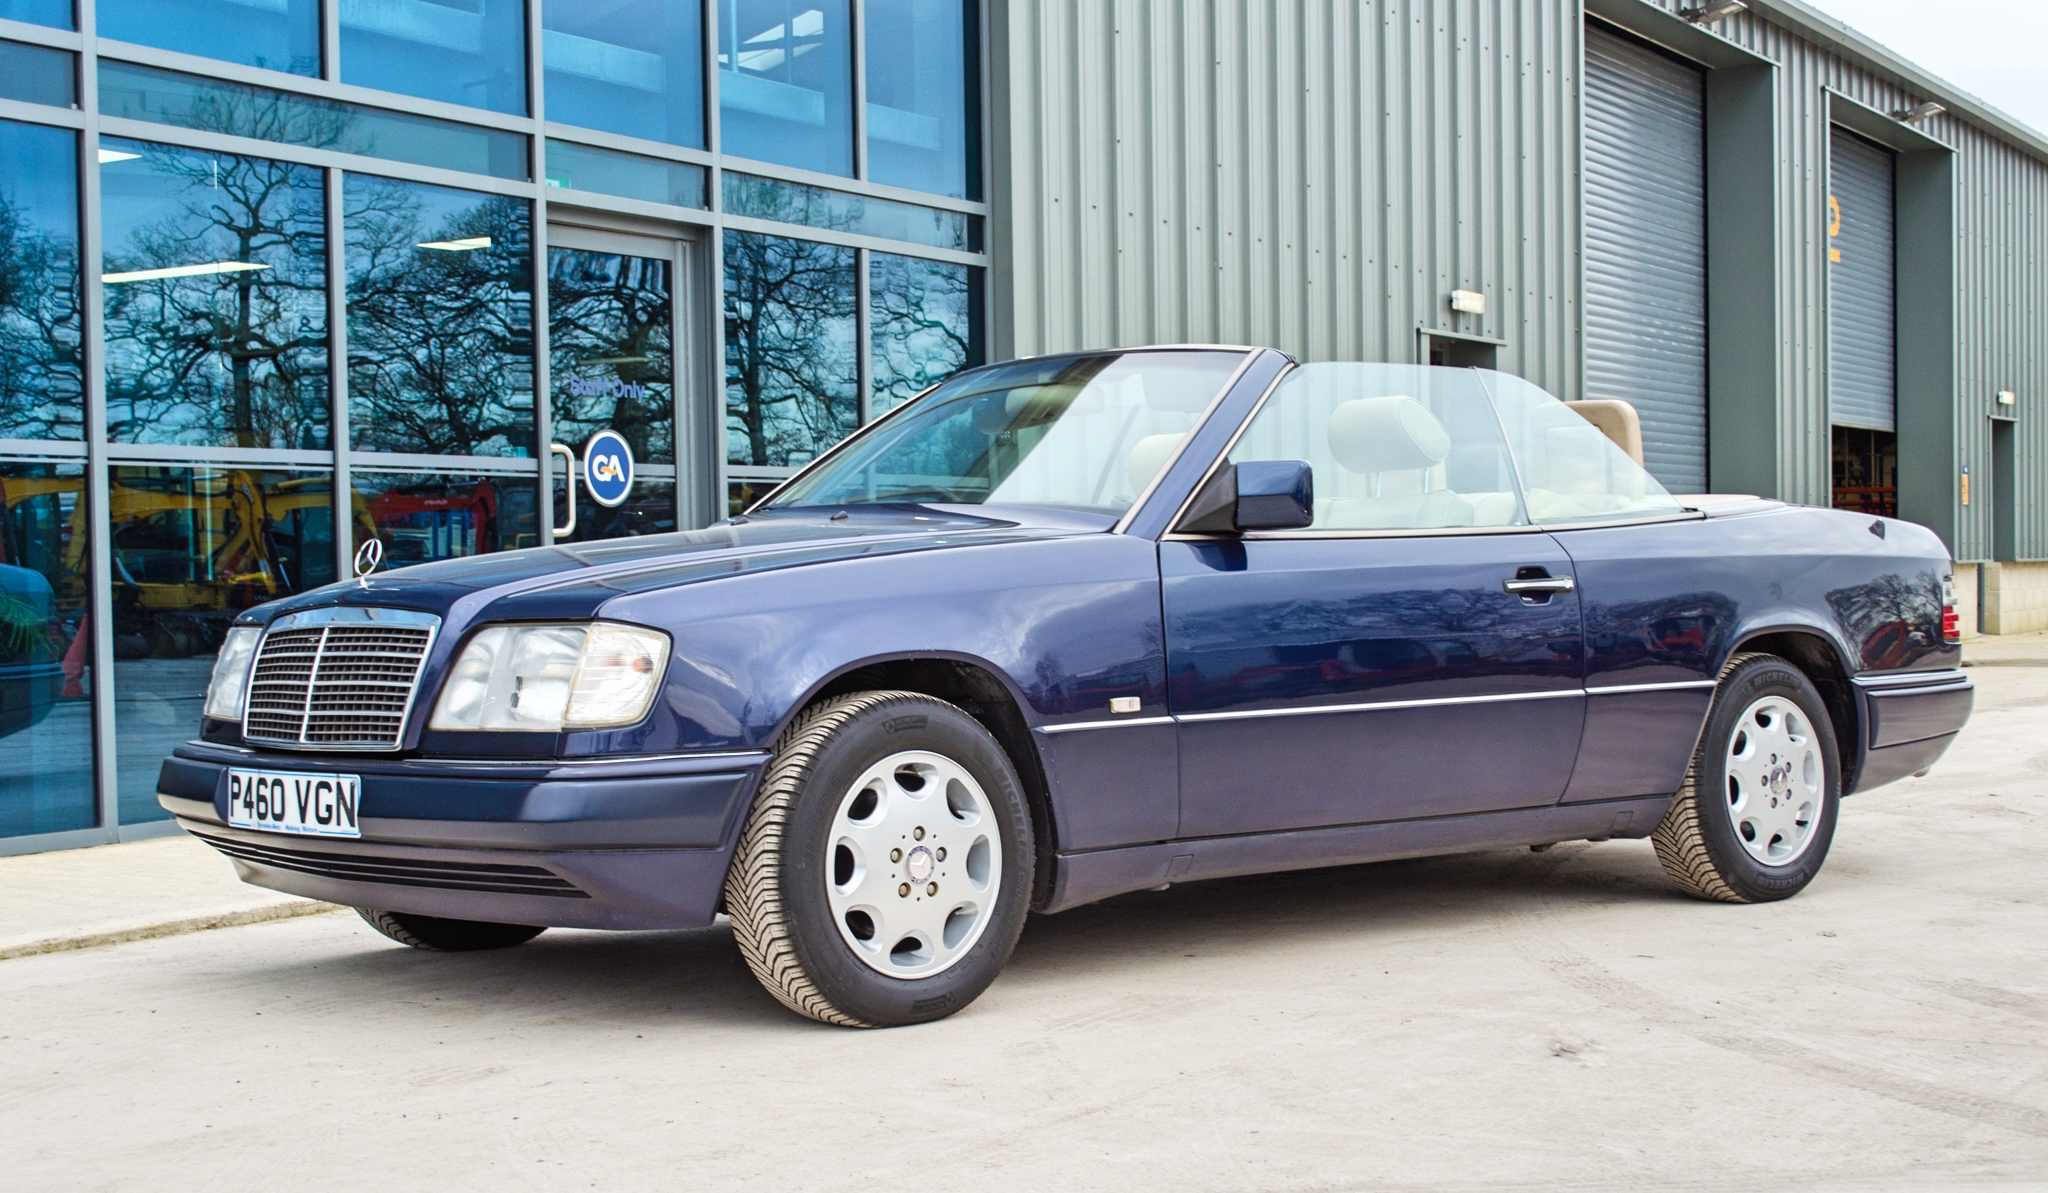 1997 Mercedes E220 2.2 litre 2 door cabriolet Registration: P460VGN Chassis: WDB1240622C292059 - Image 3 of 60